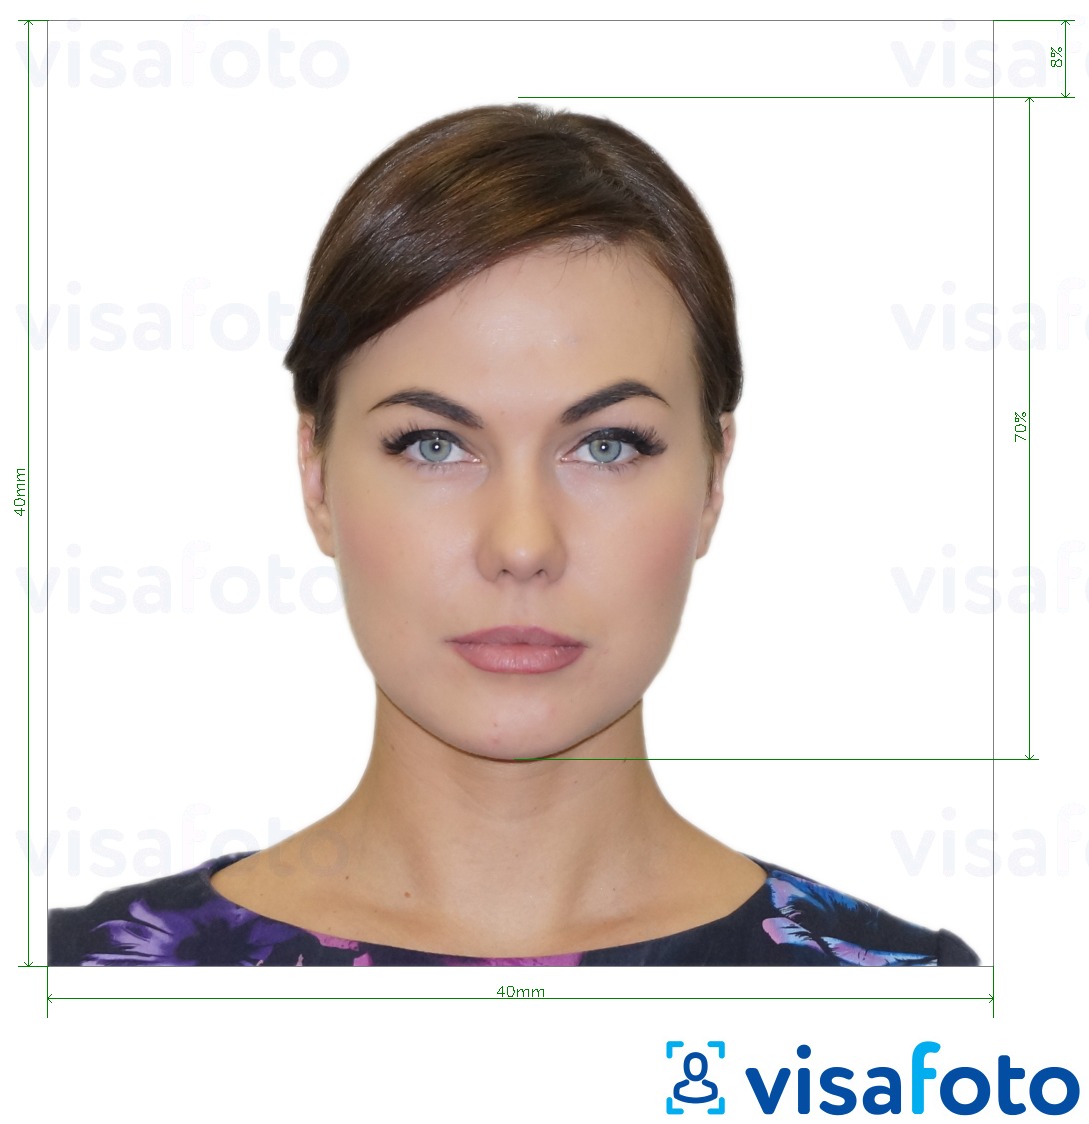 Ejemplo de foto para Visado para Argentina 4x4 cm (40x40 mm) con la especificación del tamaño exacto